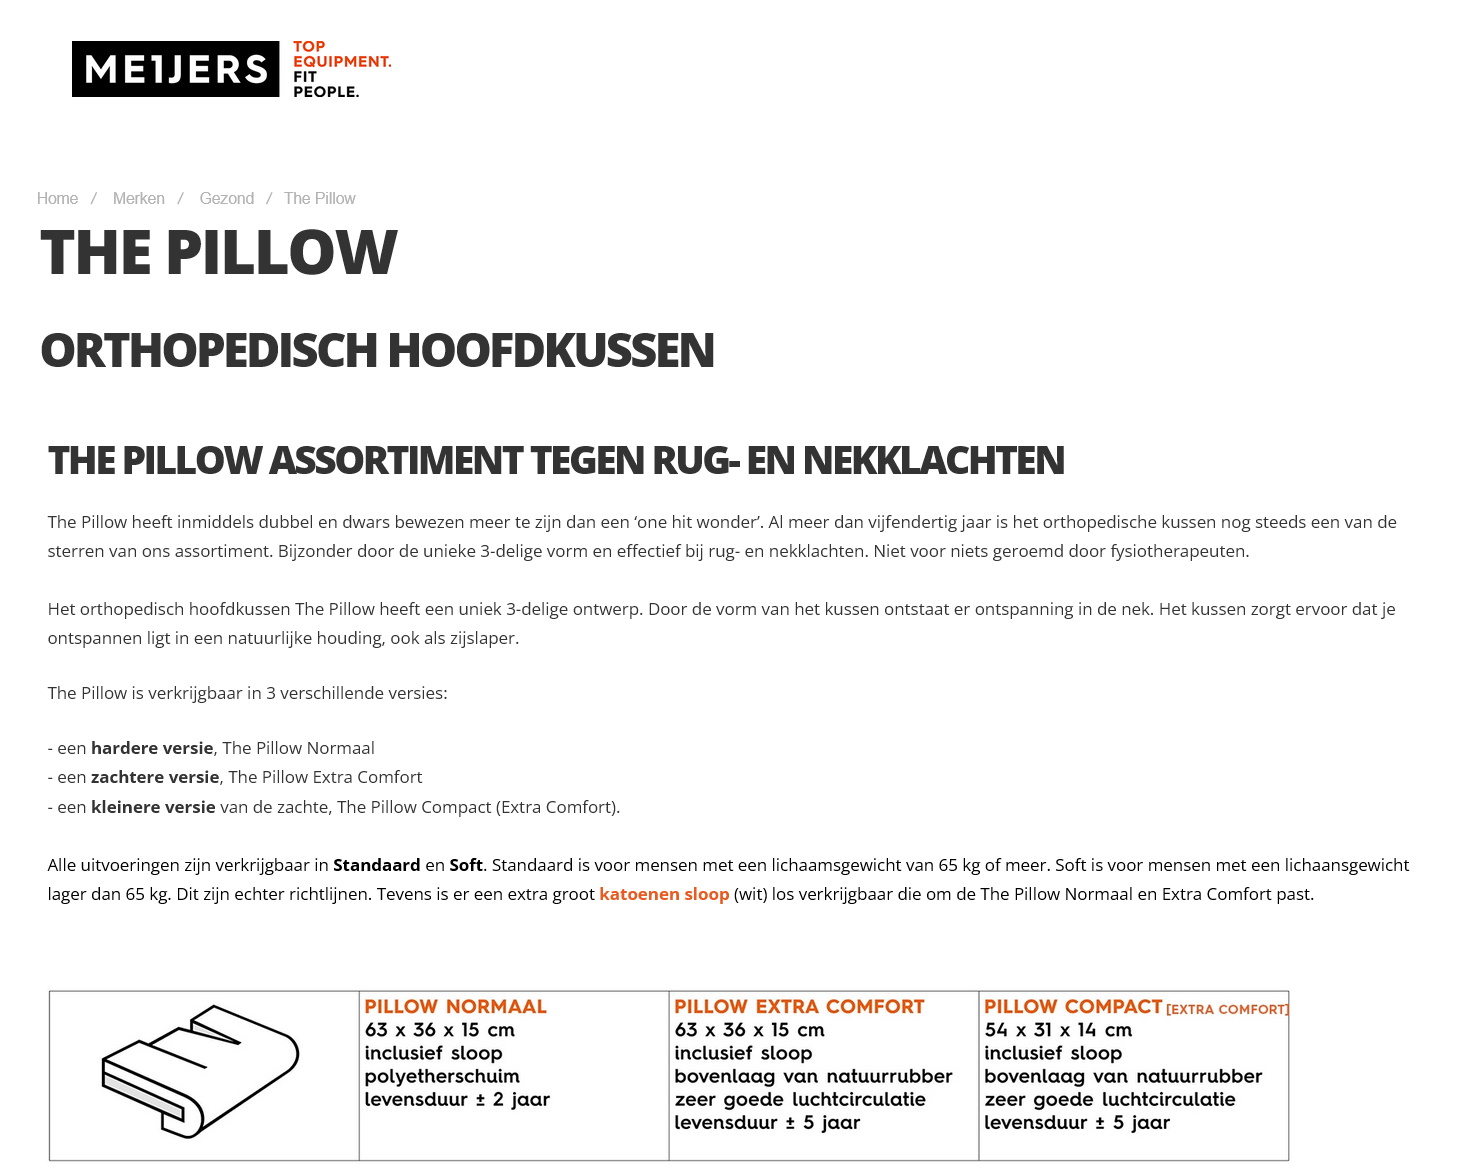 toegevoegd document 2 van The Pillow assortiment  